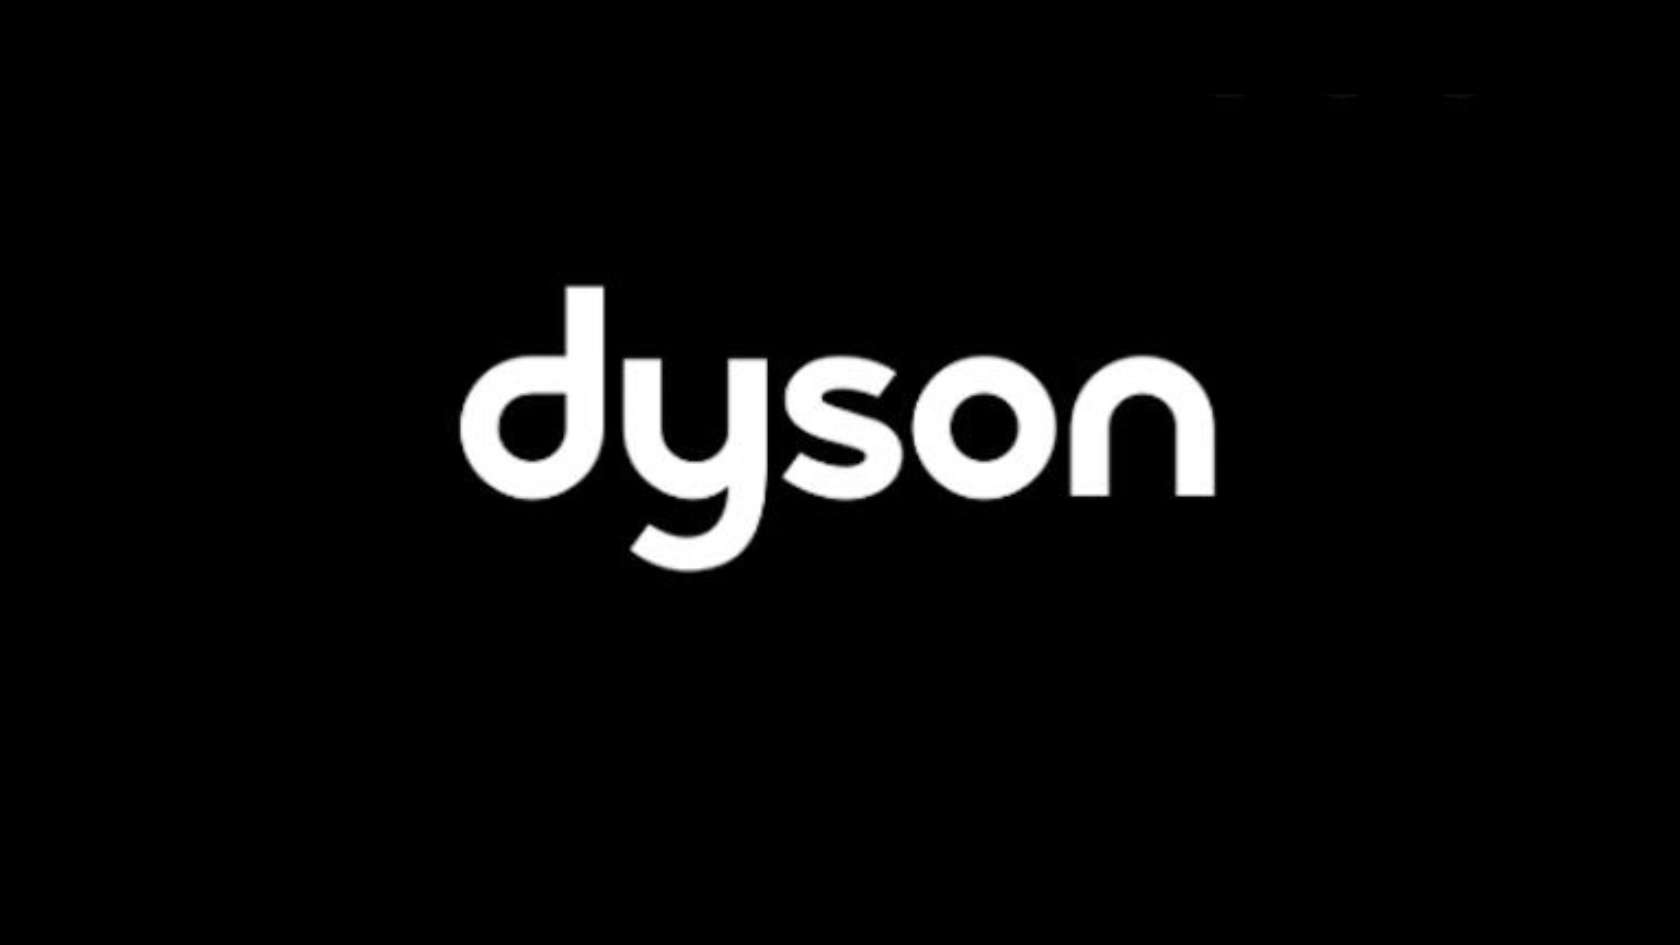 dyson logo 1680x945